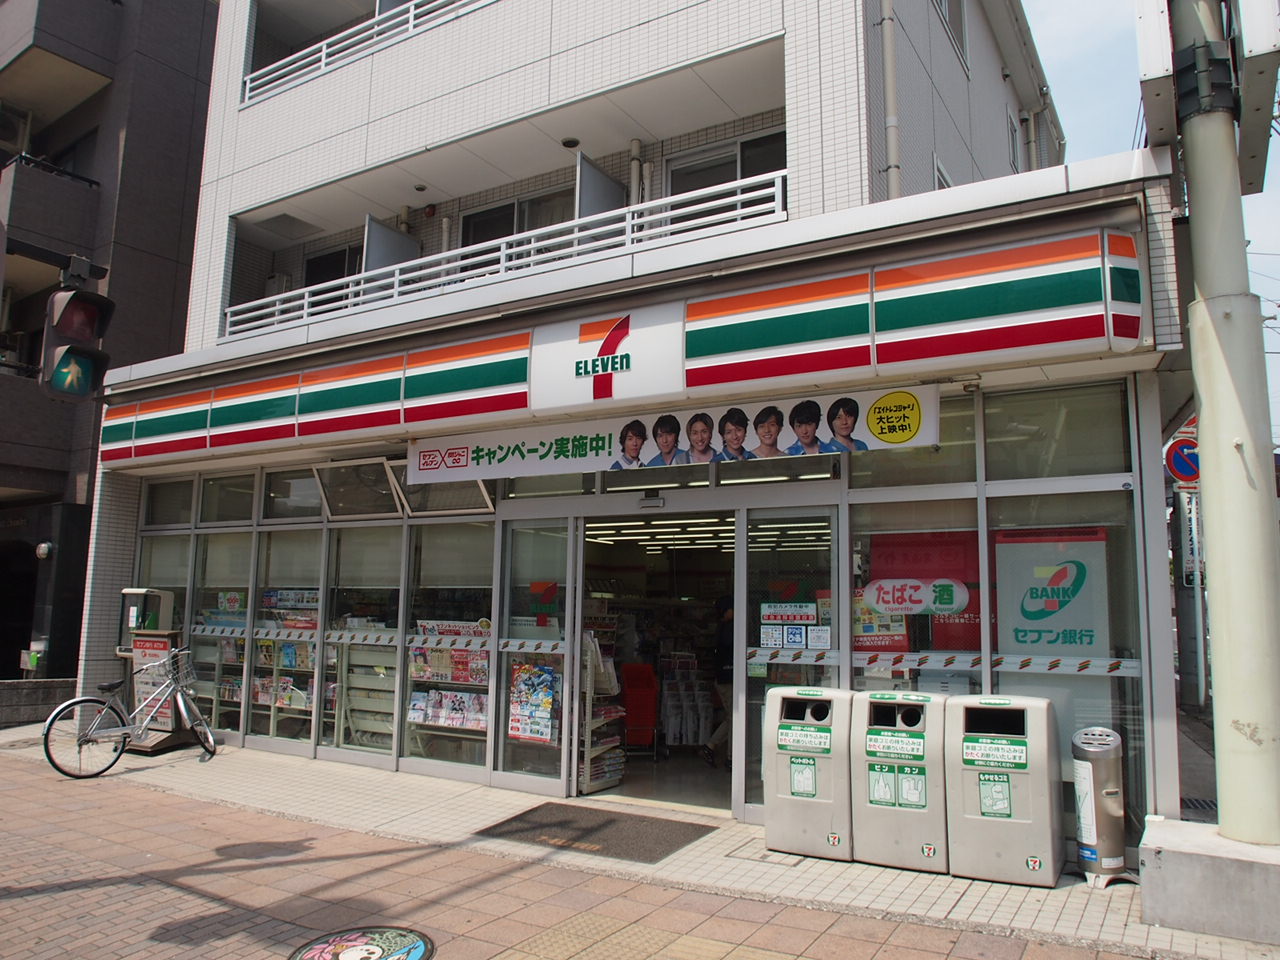 Convenience store. Seven-Eleven Noborito store up (convenience store) 192m